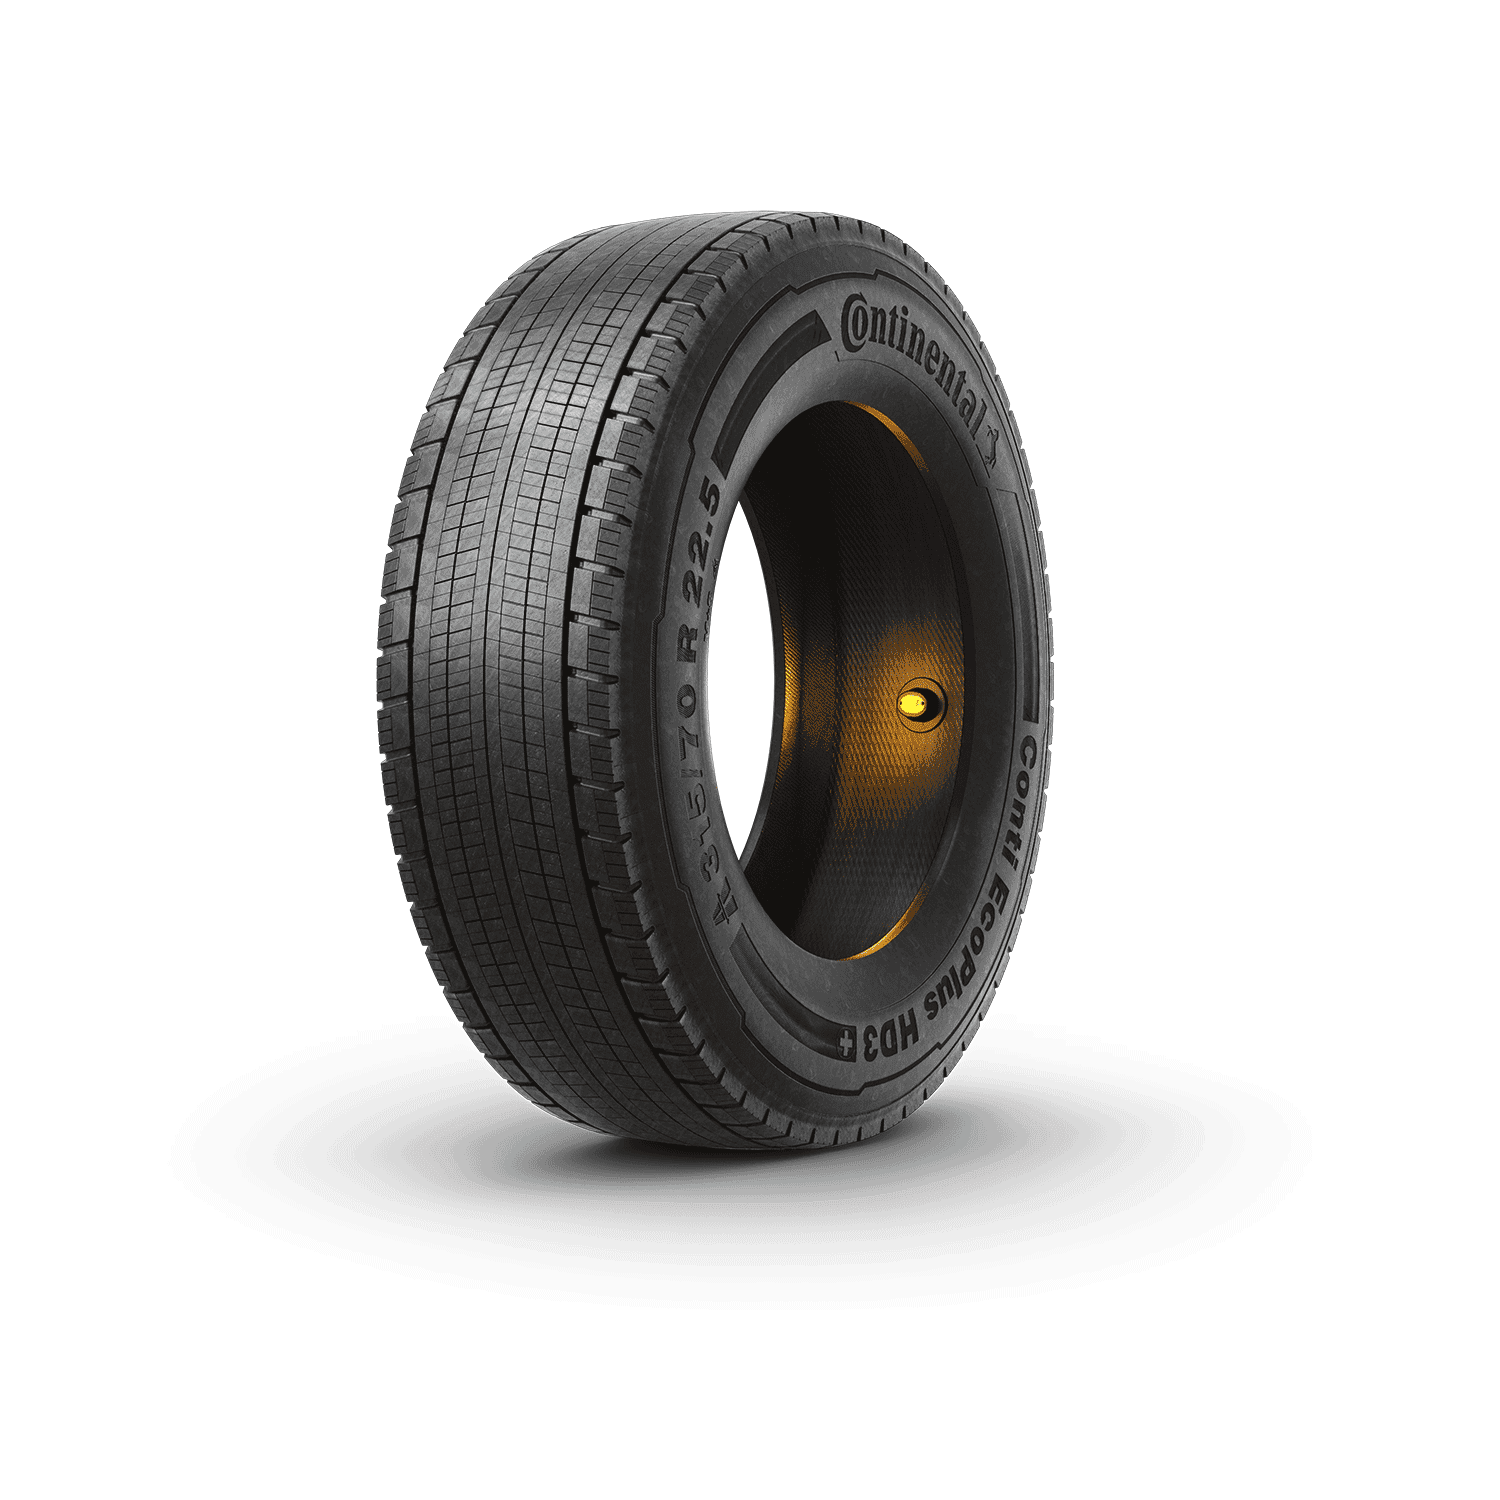 ContiConnect Sensor in truck tire